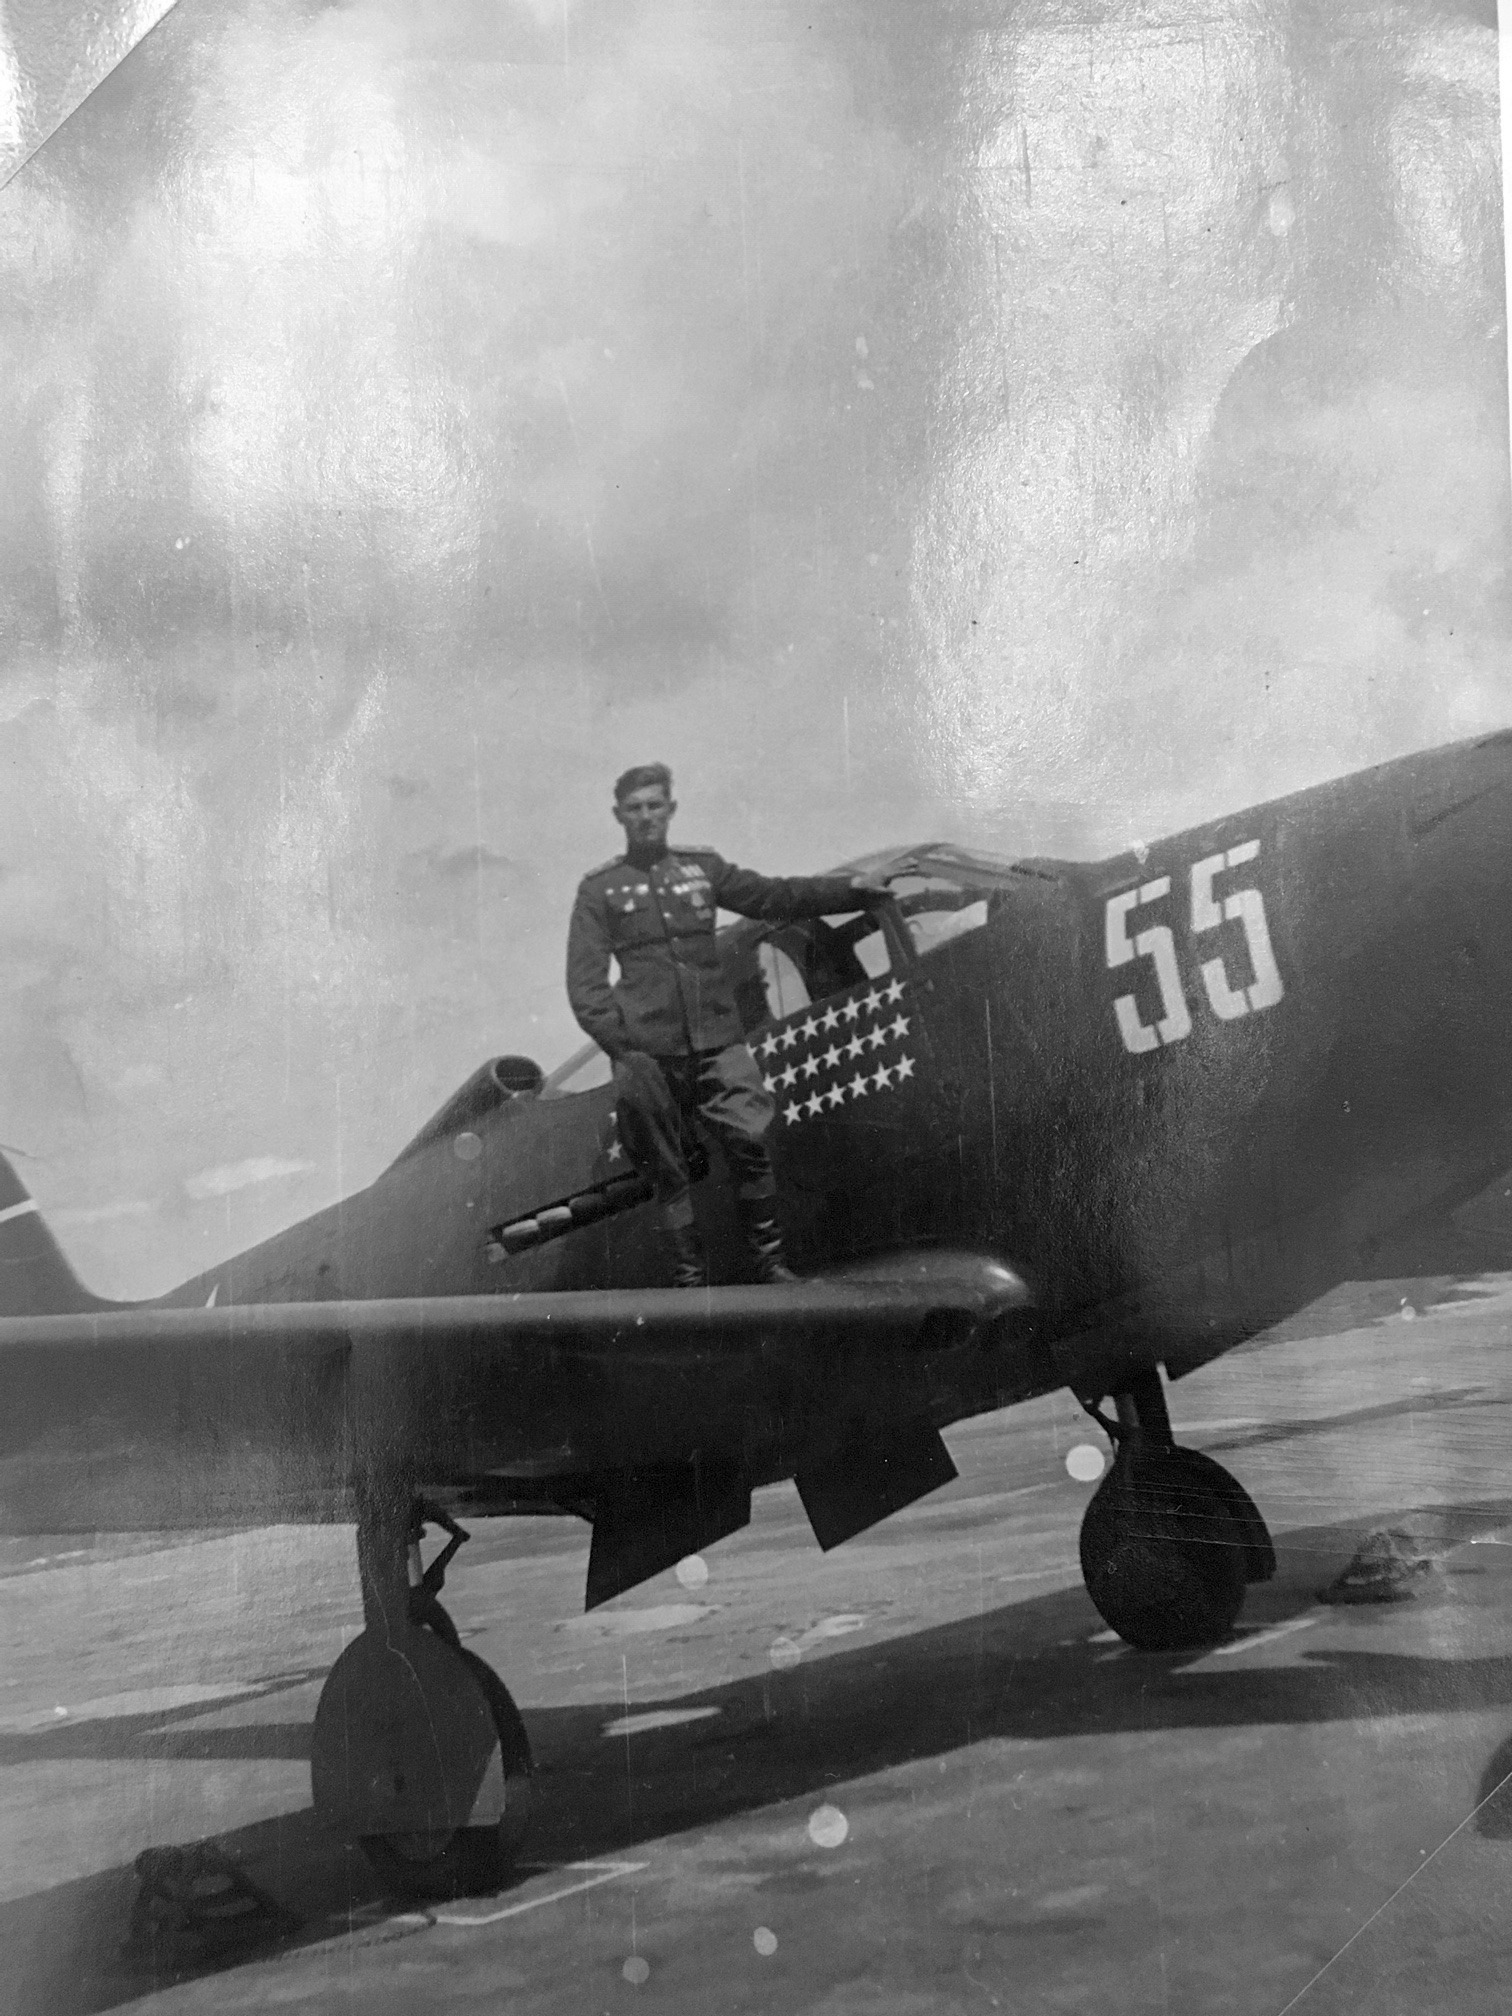 Р-39 67 гиап (436 иап) ВВС КА - самолеты и эмблемы